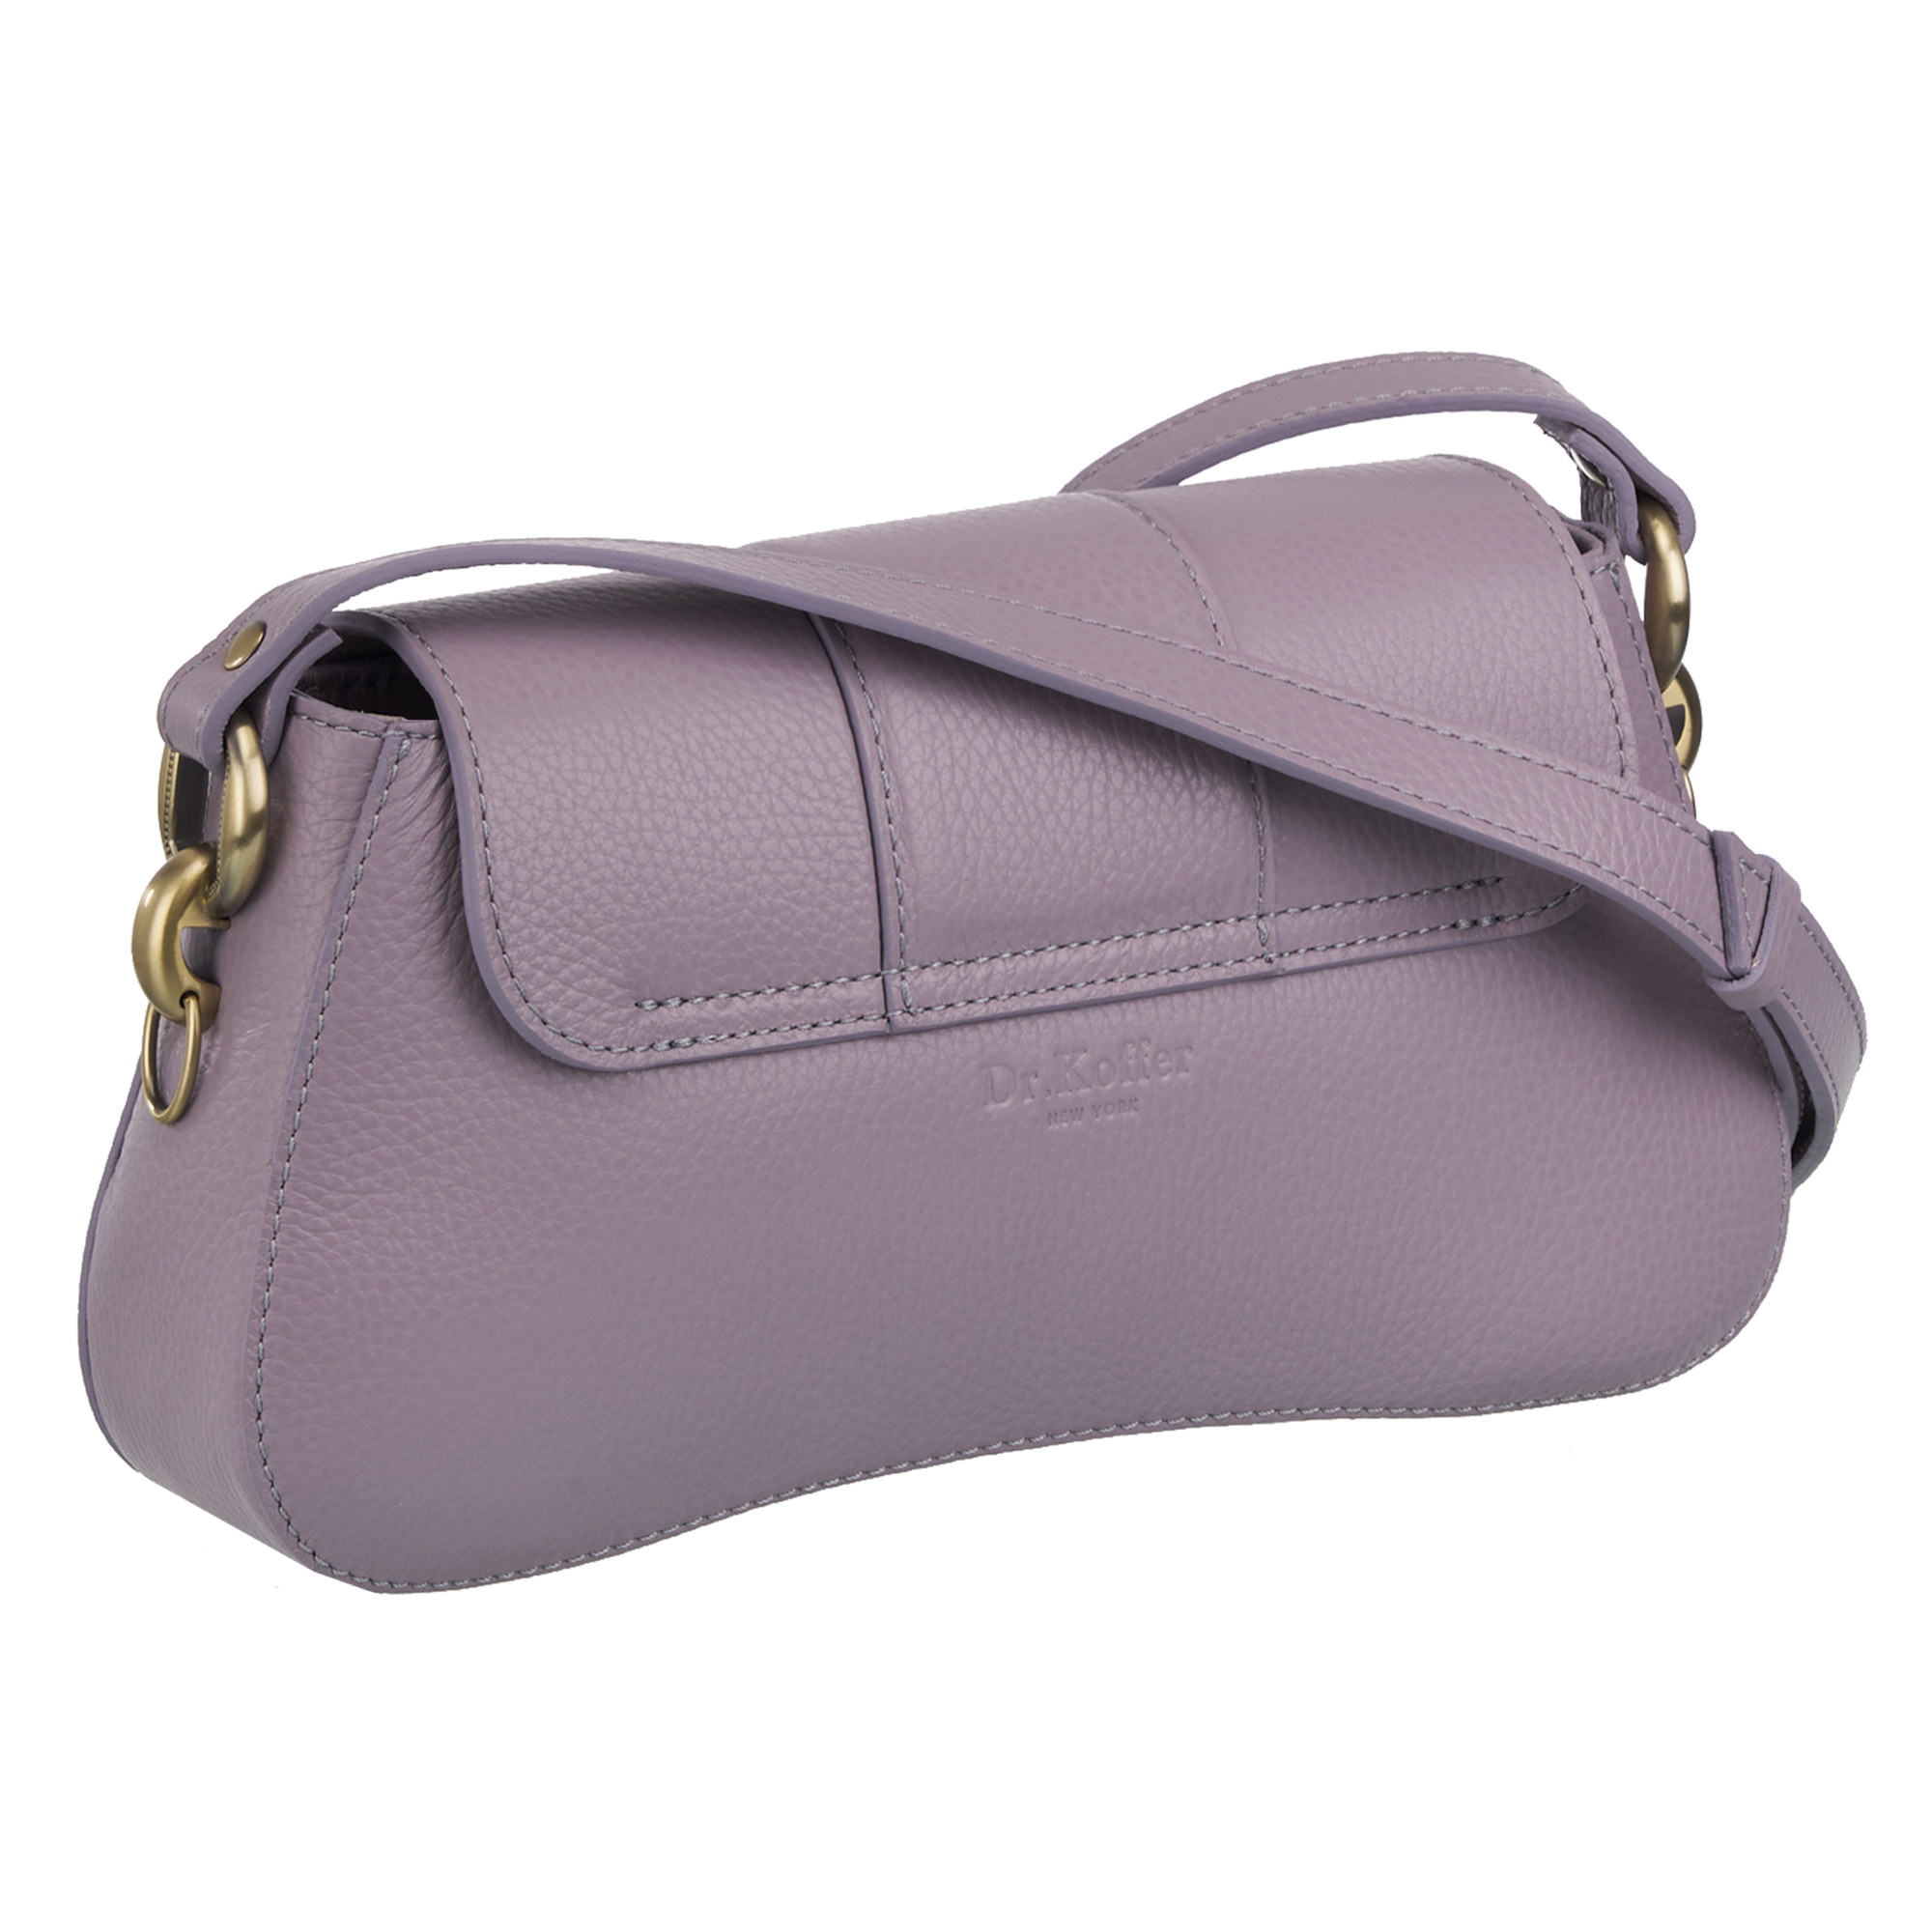 Др.Коффер 5943S-28 сумка женская, цвет фиолетовый - фото 3